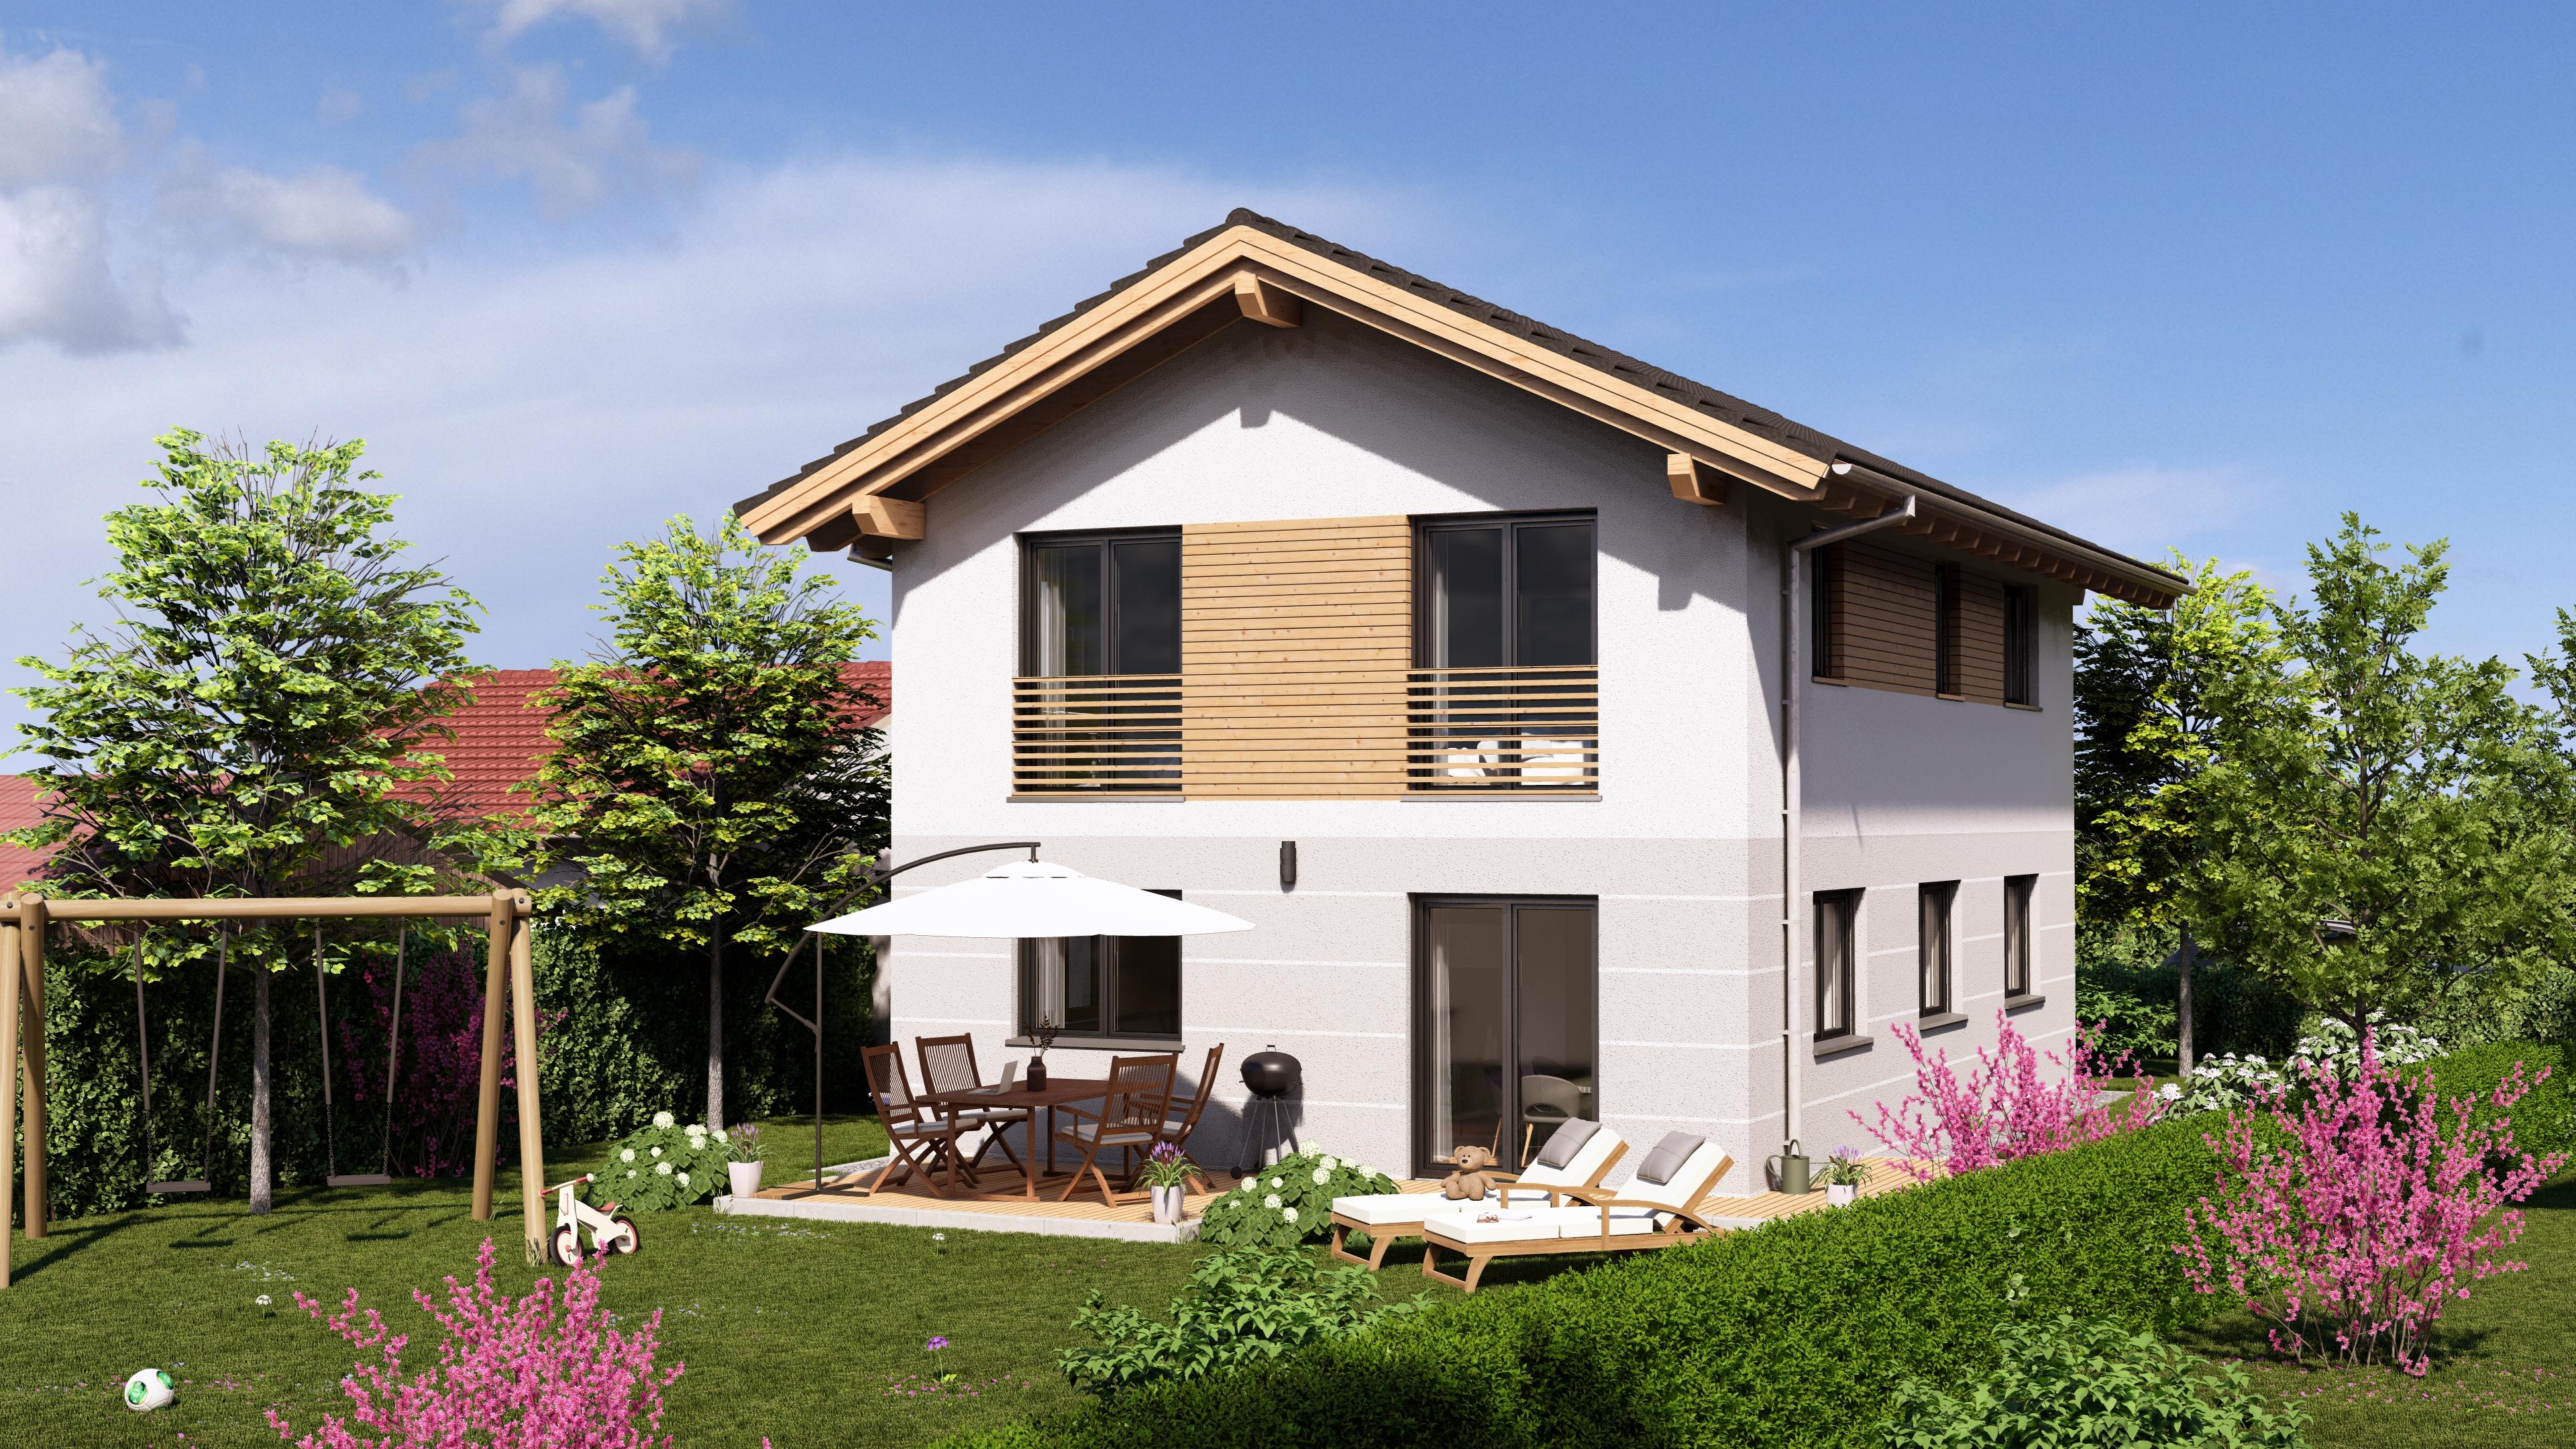 Neubau Einfamilienhaus in Trostberg - schlüsselfertig - energieeffizient